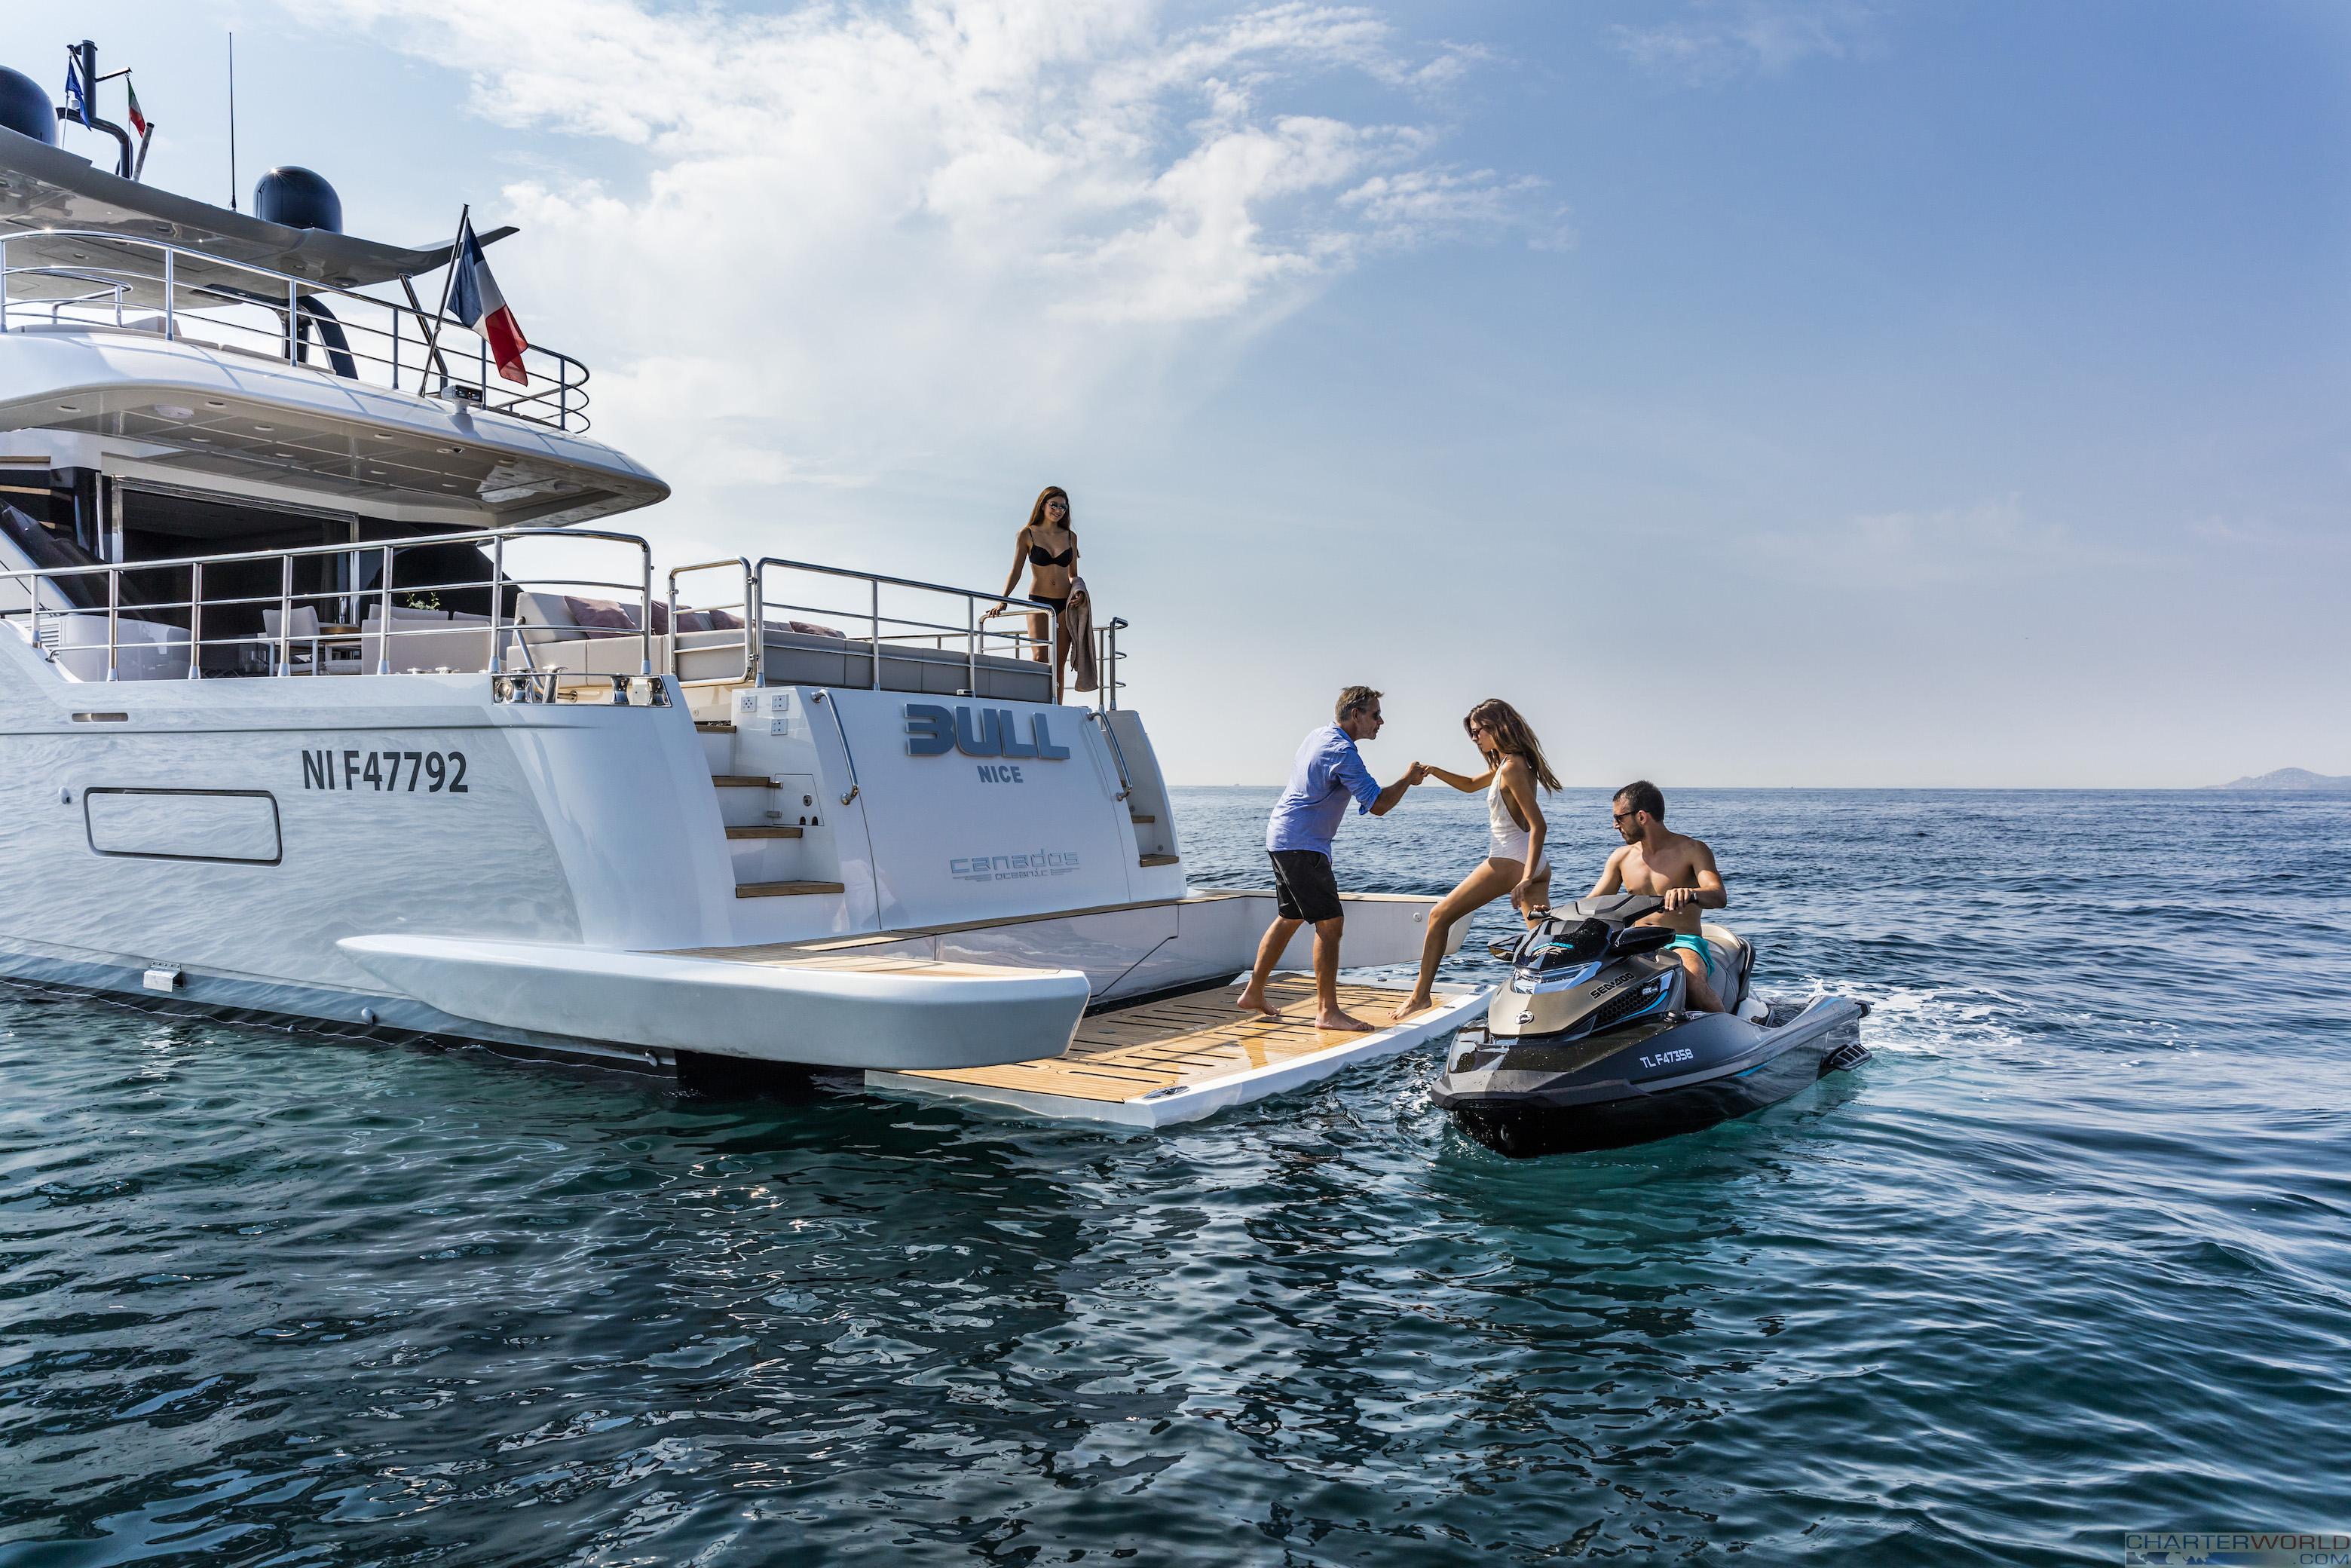 mediterranean crewed yacht charter